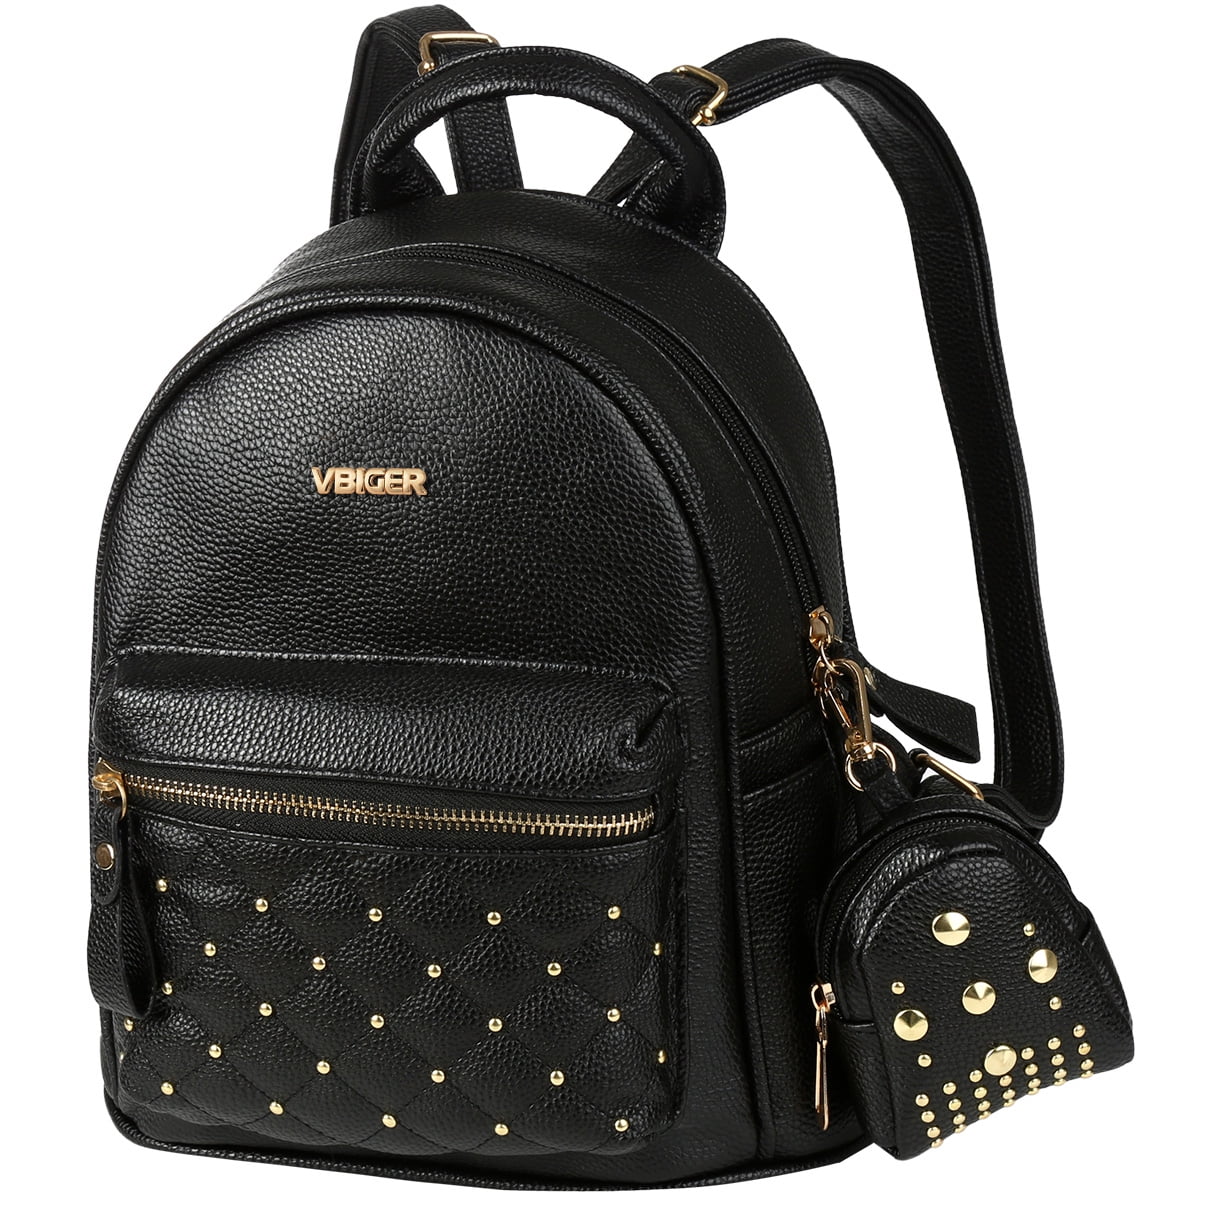 PU Leather Shoulder Bag,Model Of Camel Backpack,Portable Travel School Rucksack,Satchel with Top Handle 